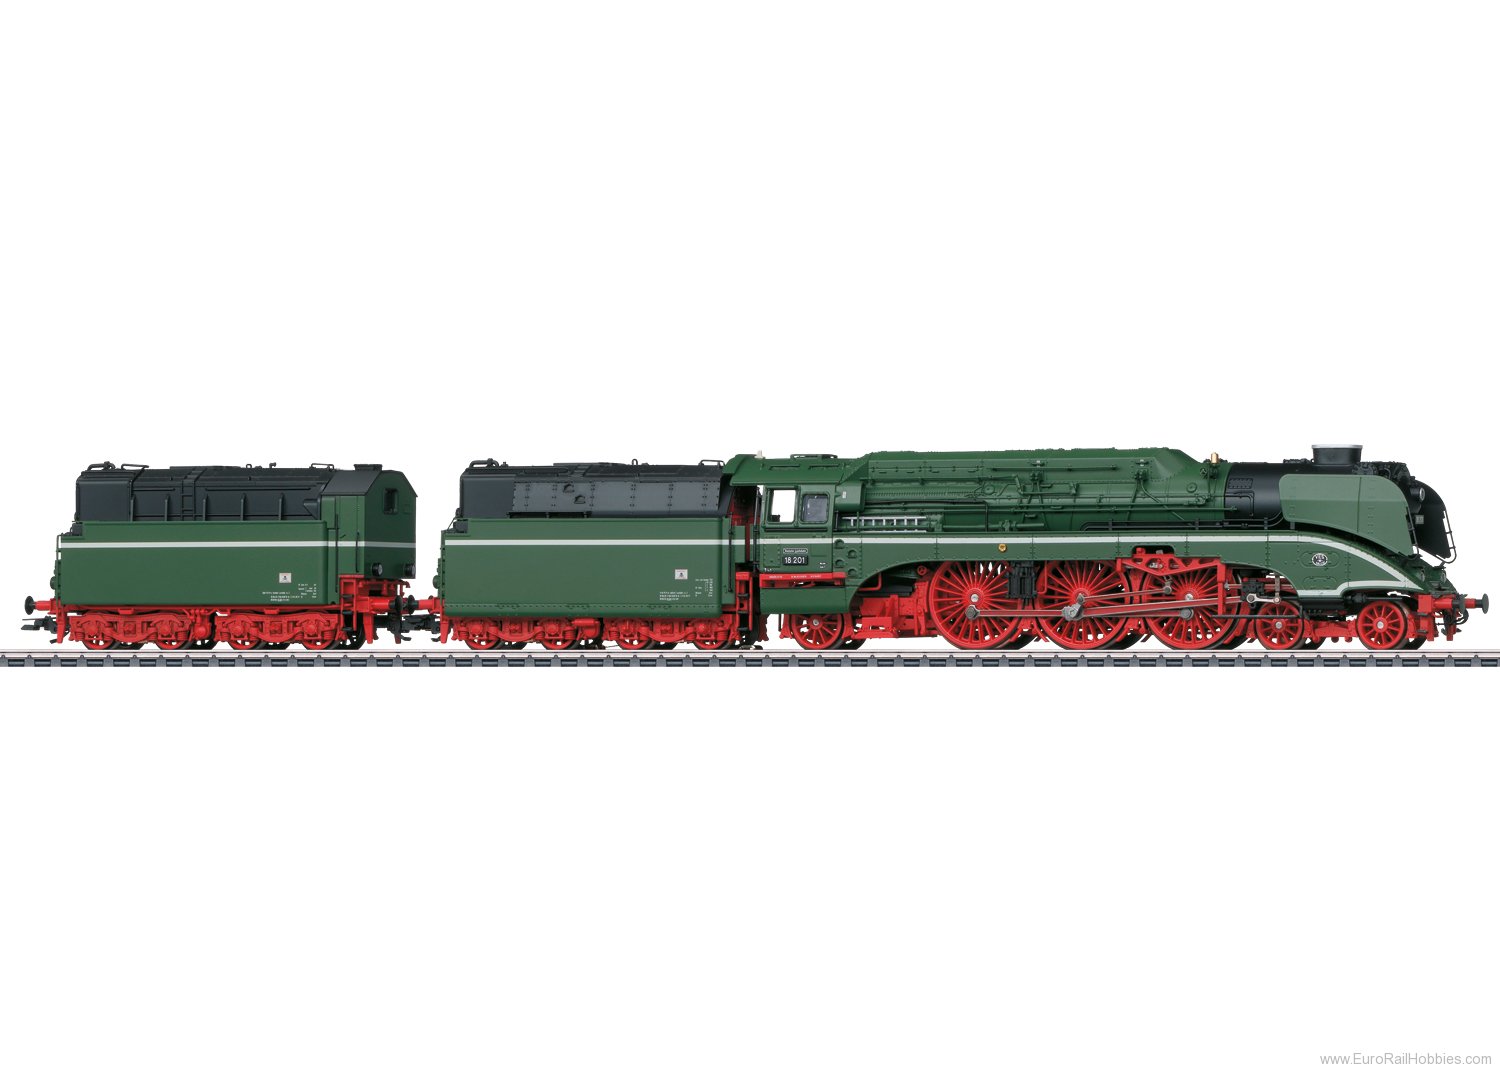 Trix 25020 GDR Steam Locomotive, Road Number 18 201 (TRI